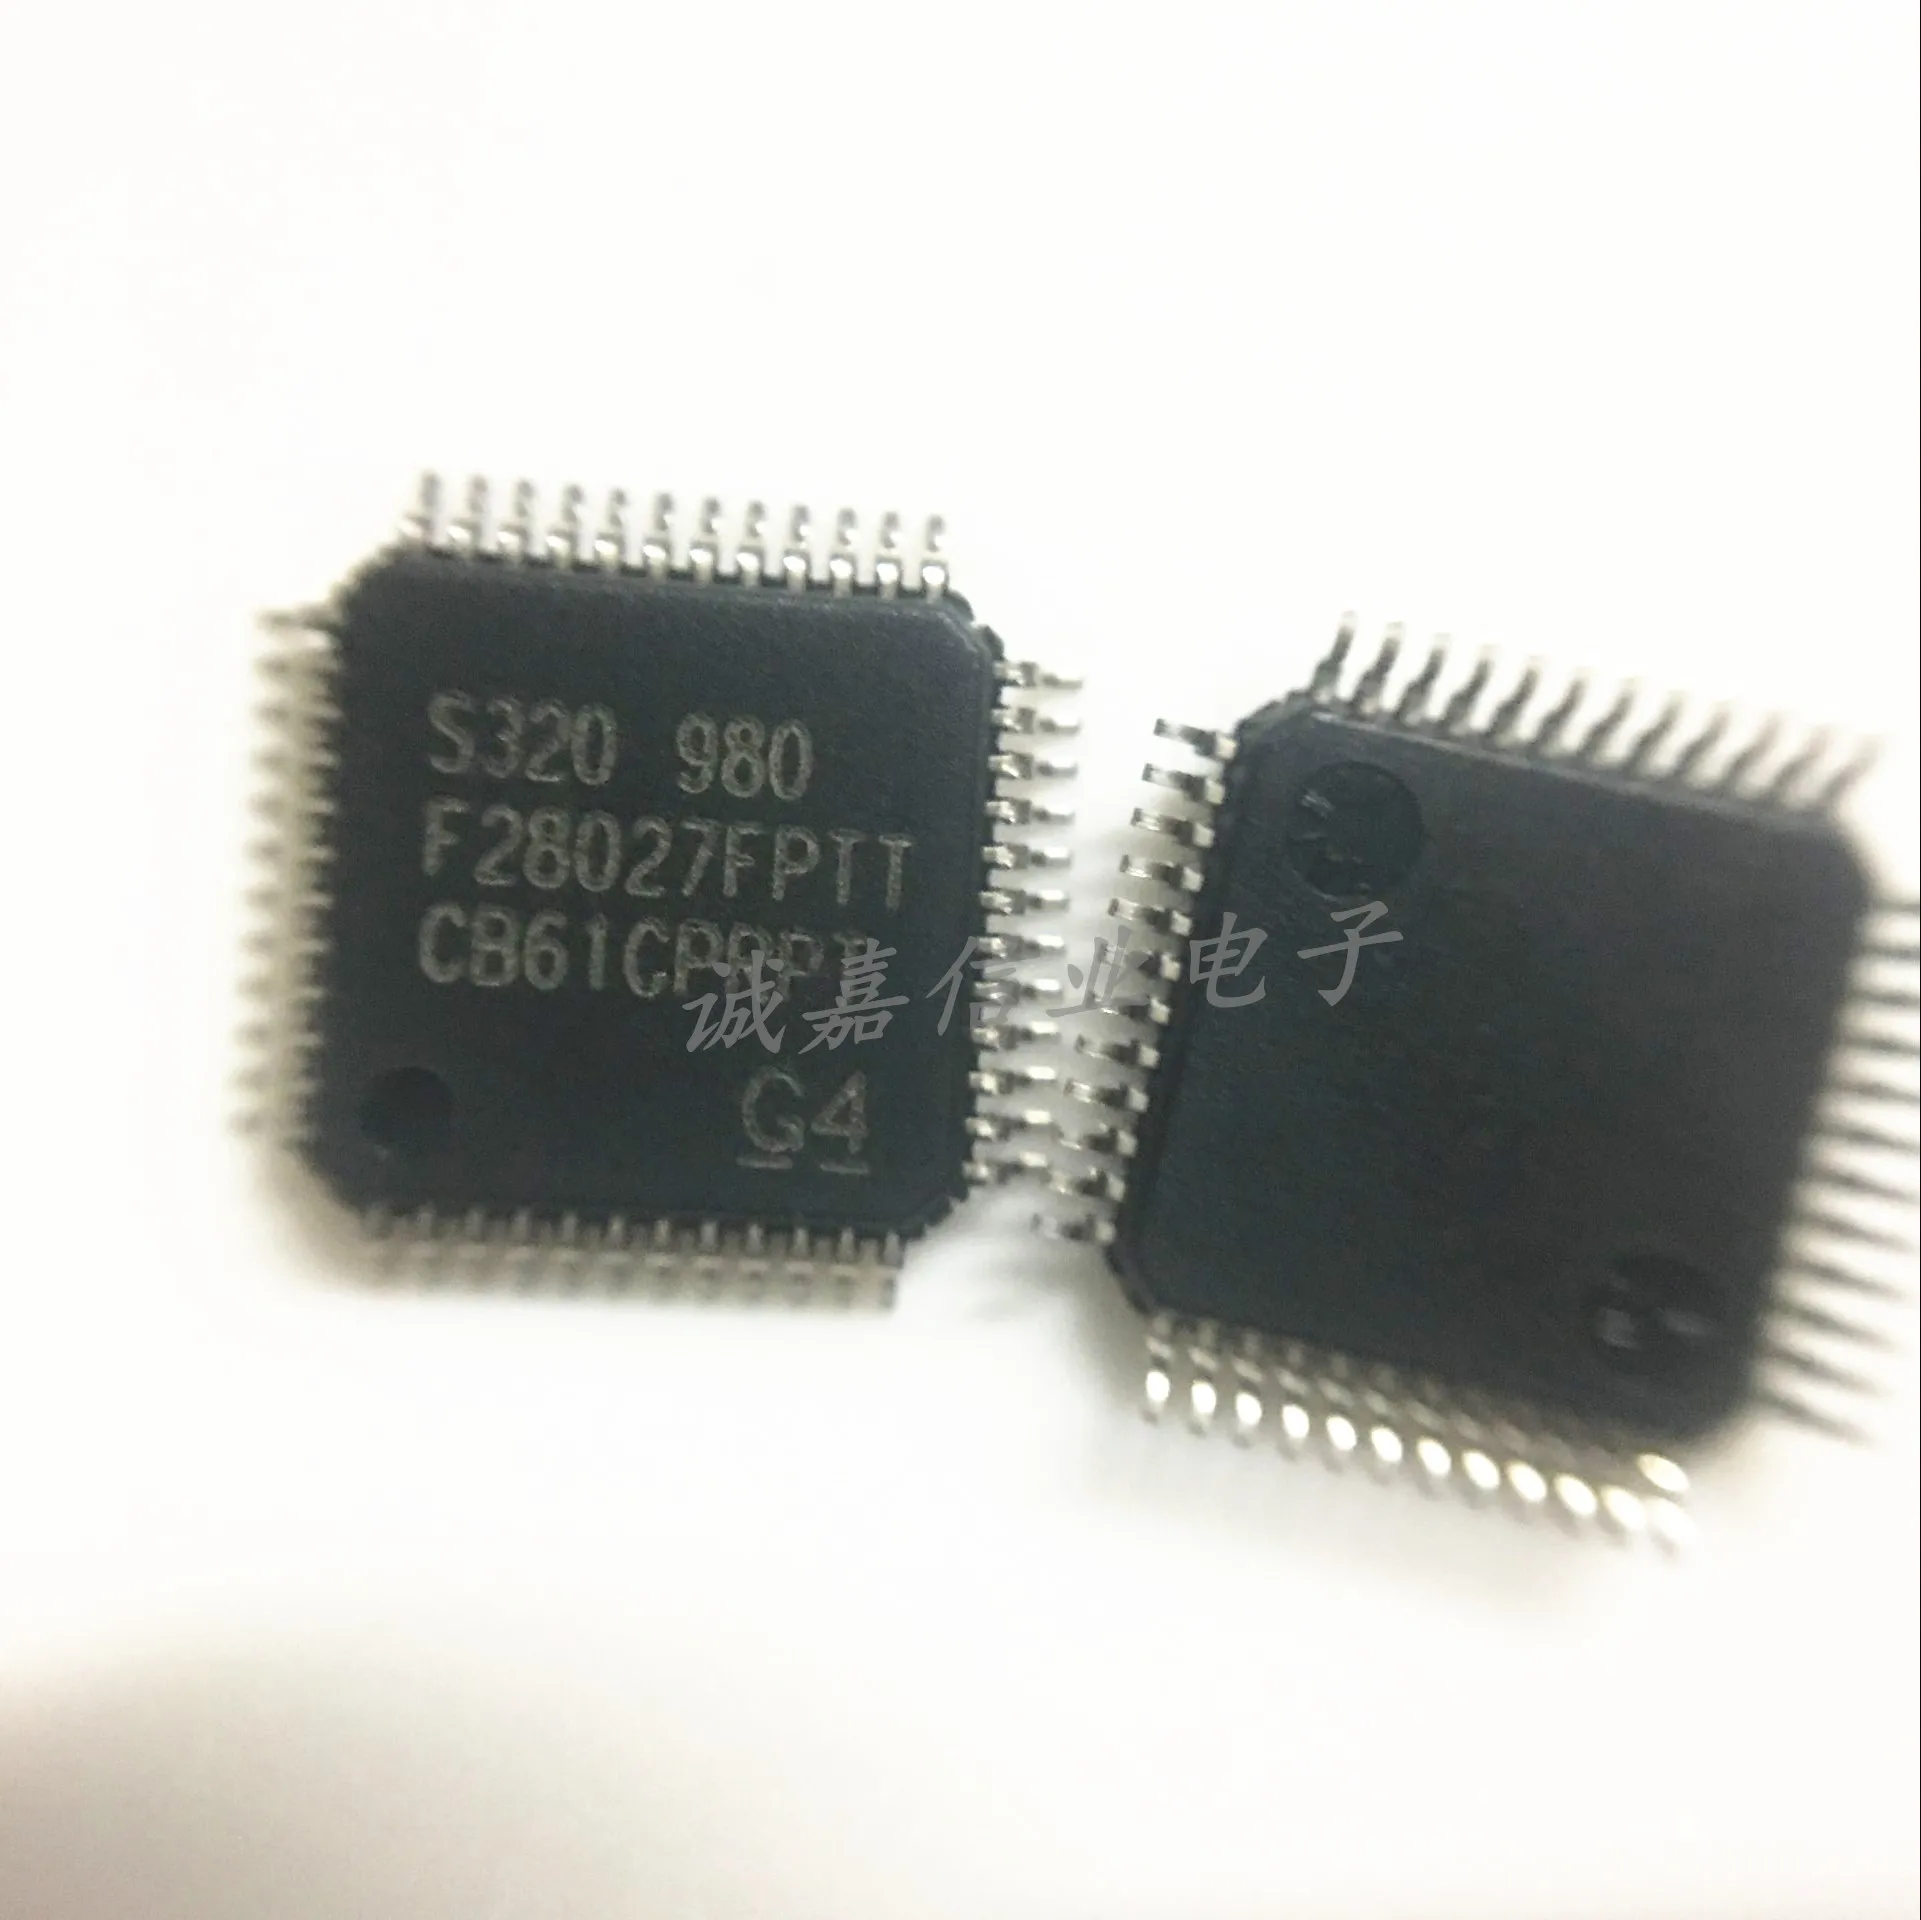 

5pcs/Lot TMS320F28027FPTT LQFP-48 32-bit Microcontrollers - MCU Piccolo MicroCntrllr 60 MHz 32 bit